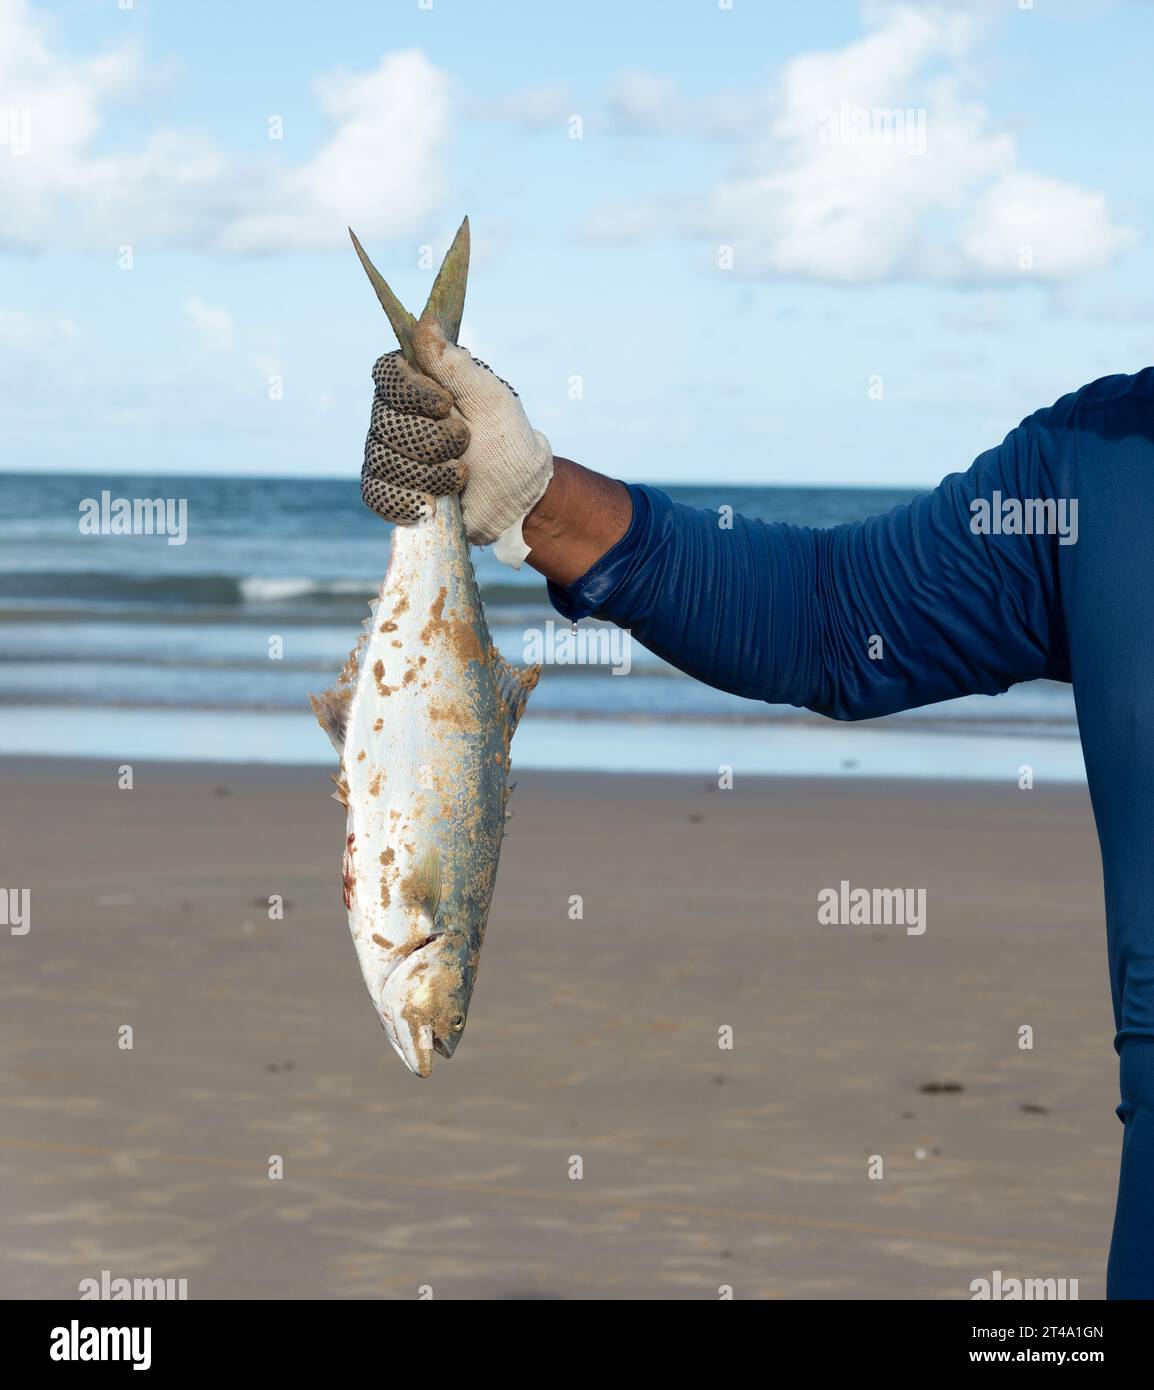 Salvador, Bahia, Brasilien - 26. April 2019: Ein Tarponfisch, Megalops atlanticus, wird von einem Fischer gehalten. Stockfoto